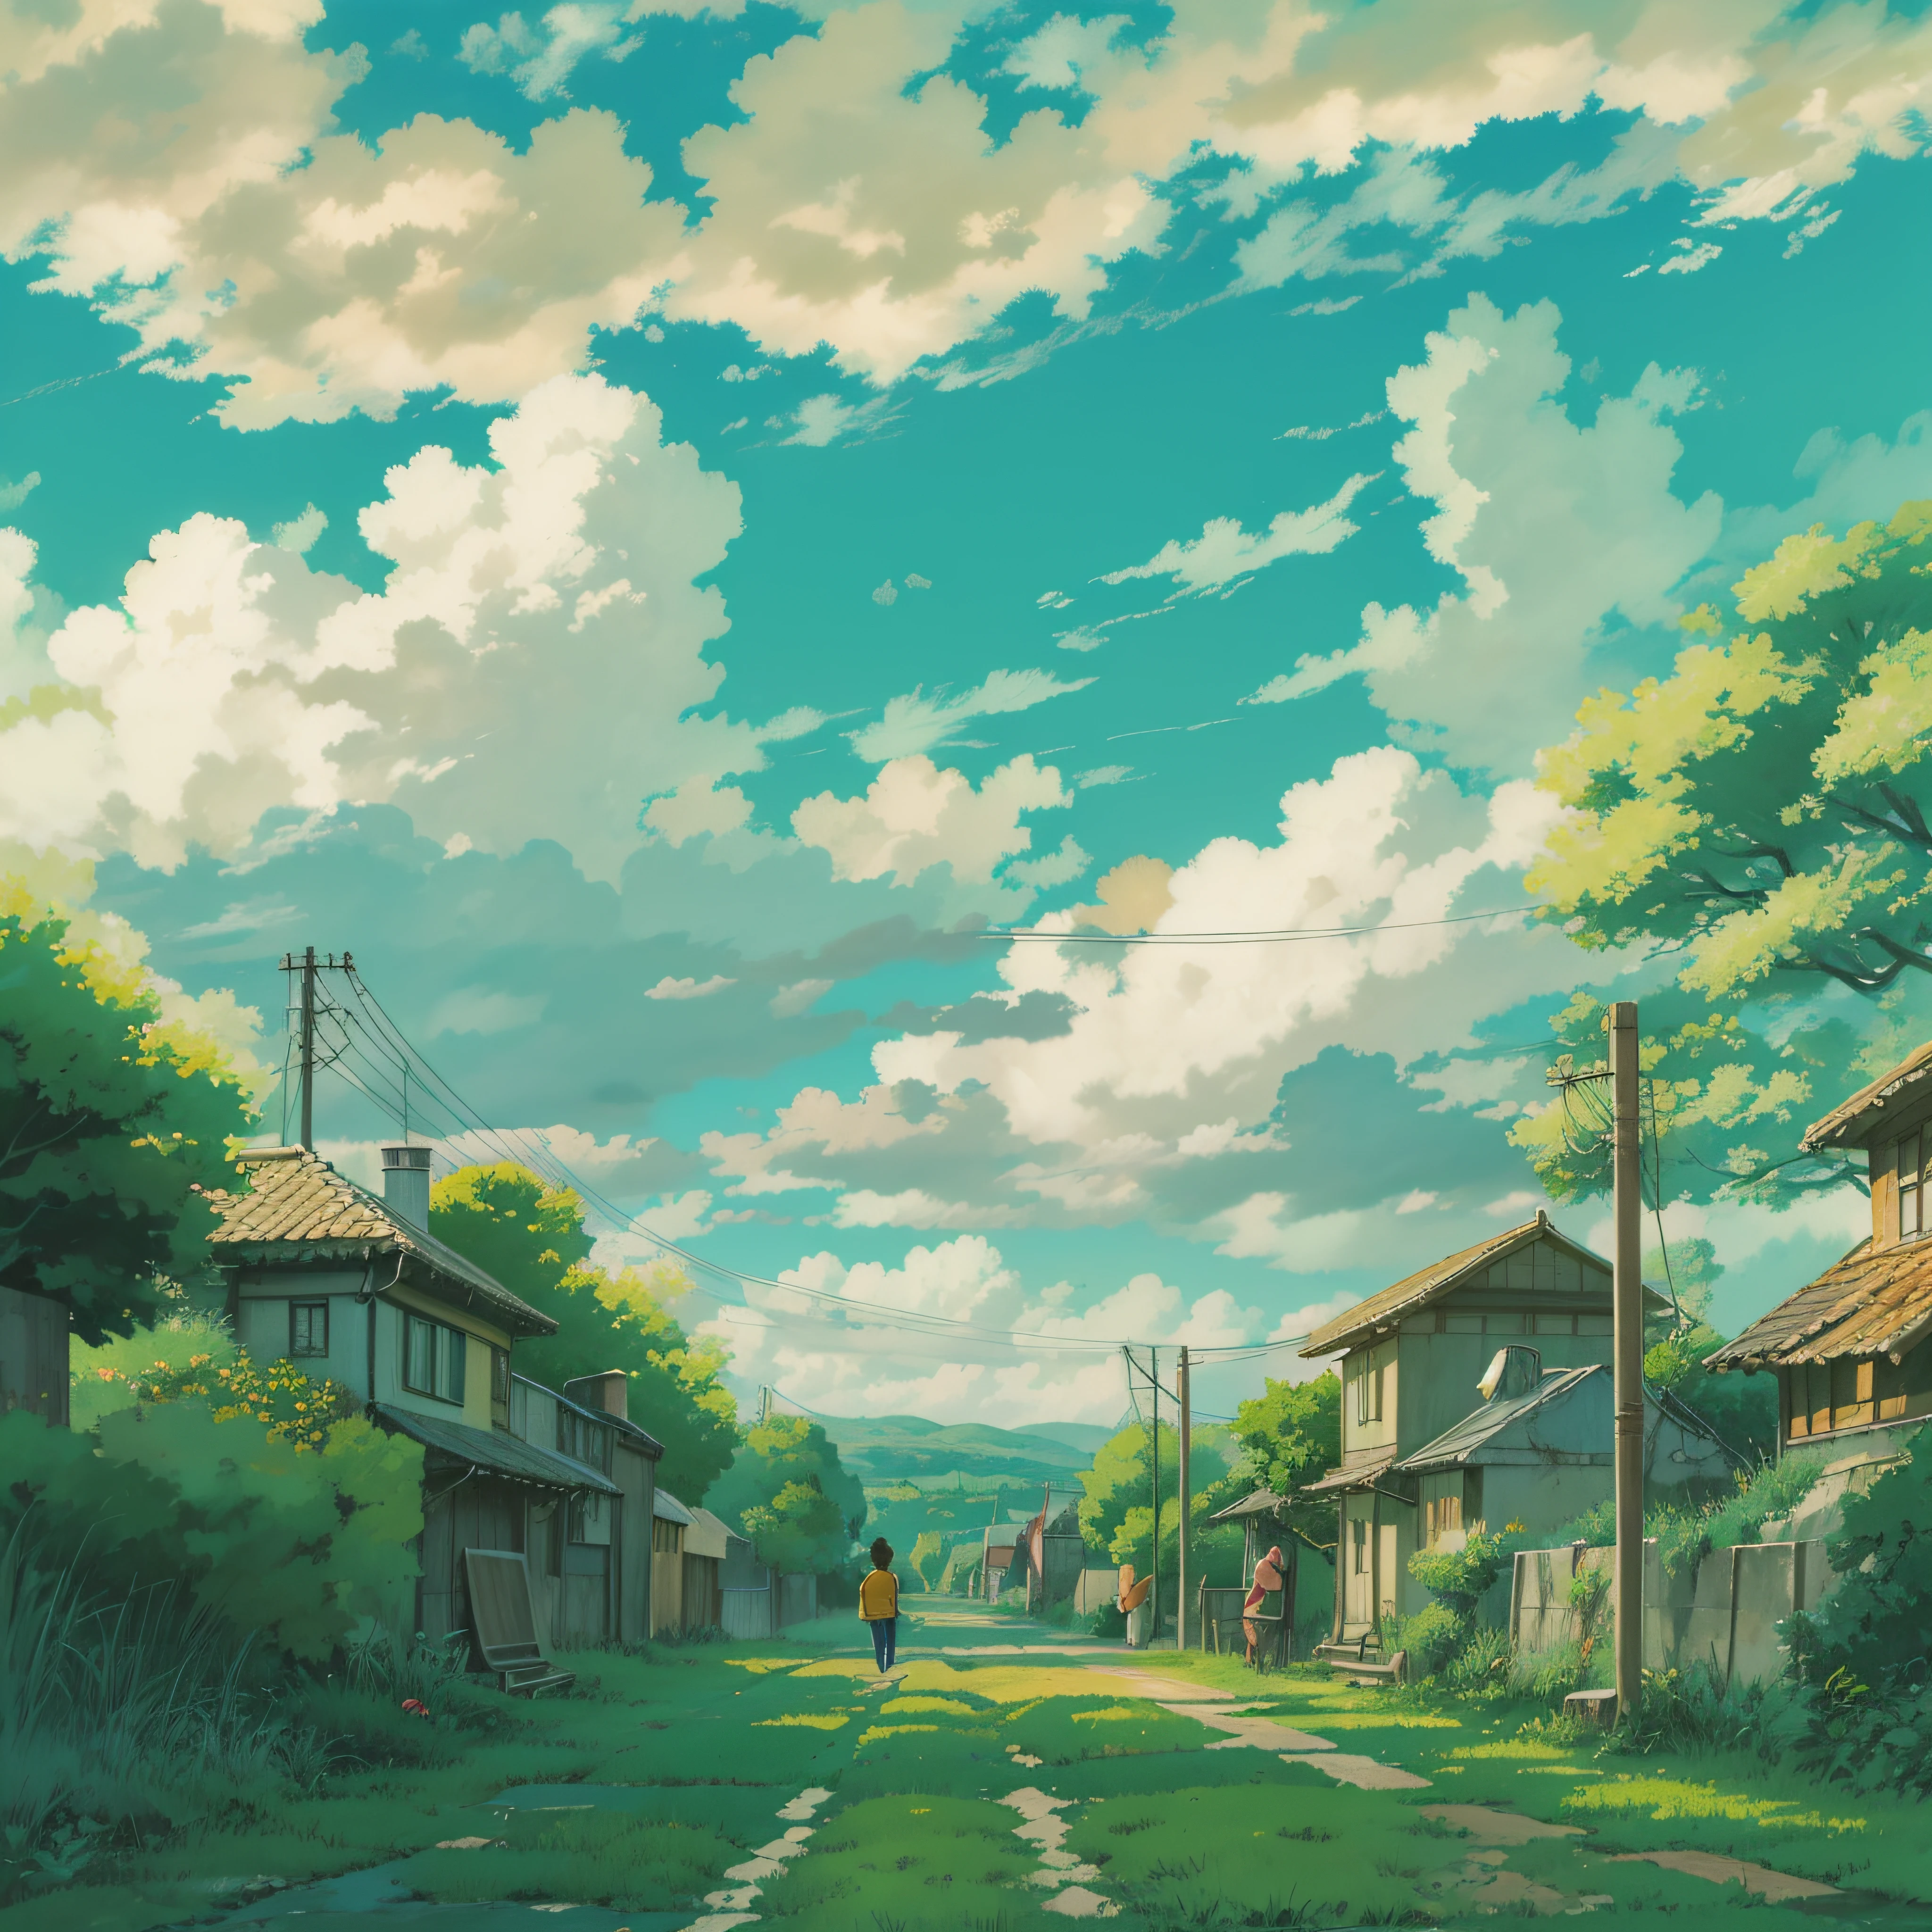 und Seelen、Himmelslandschaft mit Wolken、Landschaft ohne Gebäude、Man sieht die Berührung des Pinsels、Studio Ghibli、Ghibli、Landschaft、Stil、Goldene Zeit、Horizont,Nach dem Regen、Der Boden ist nass